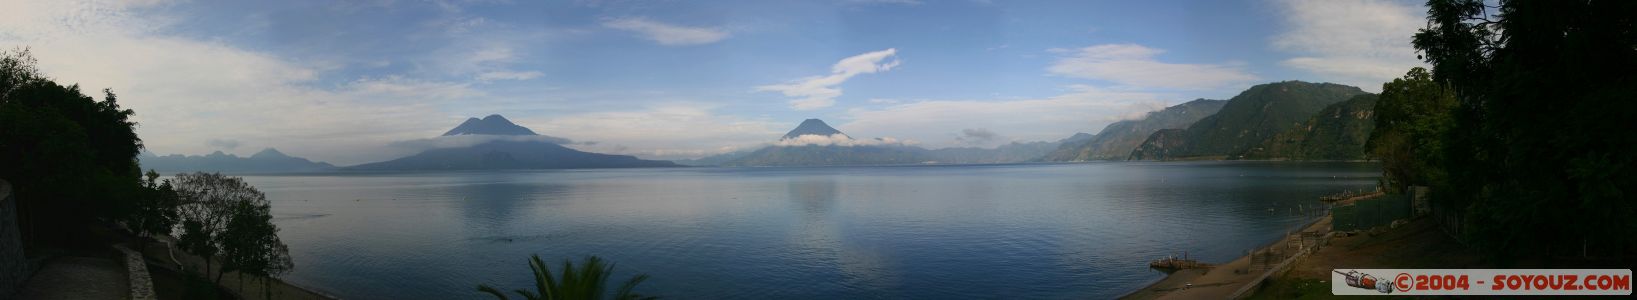 Vue Panoramique sur le lac Atitlan avec les volcans Atitlan, Toliman et San Pedro
